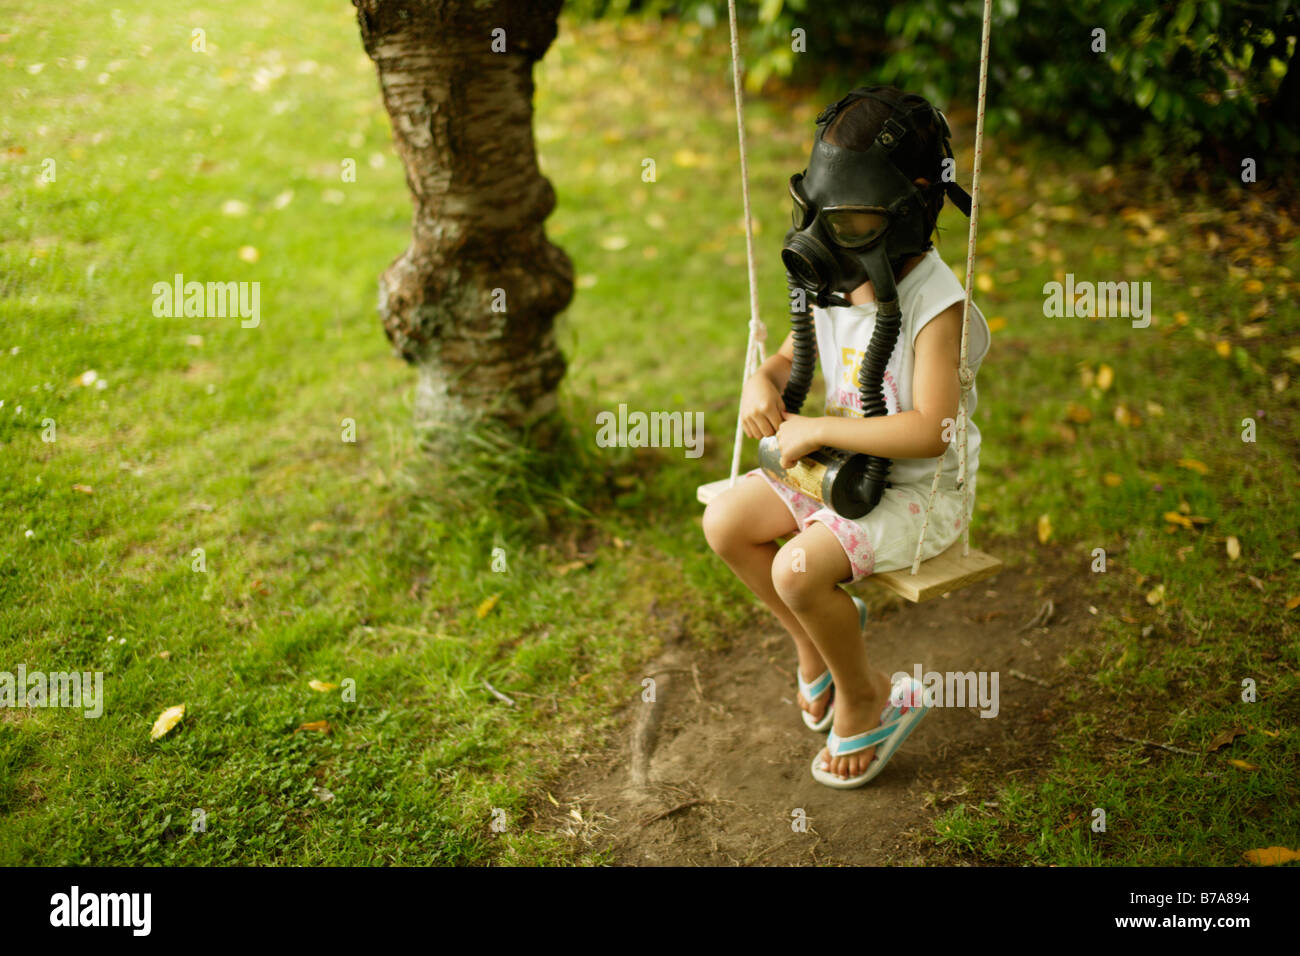 Cinco años de edad, niña sentada en el columpio llevaba una máscara de gas Foto de stock